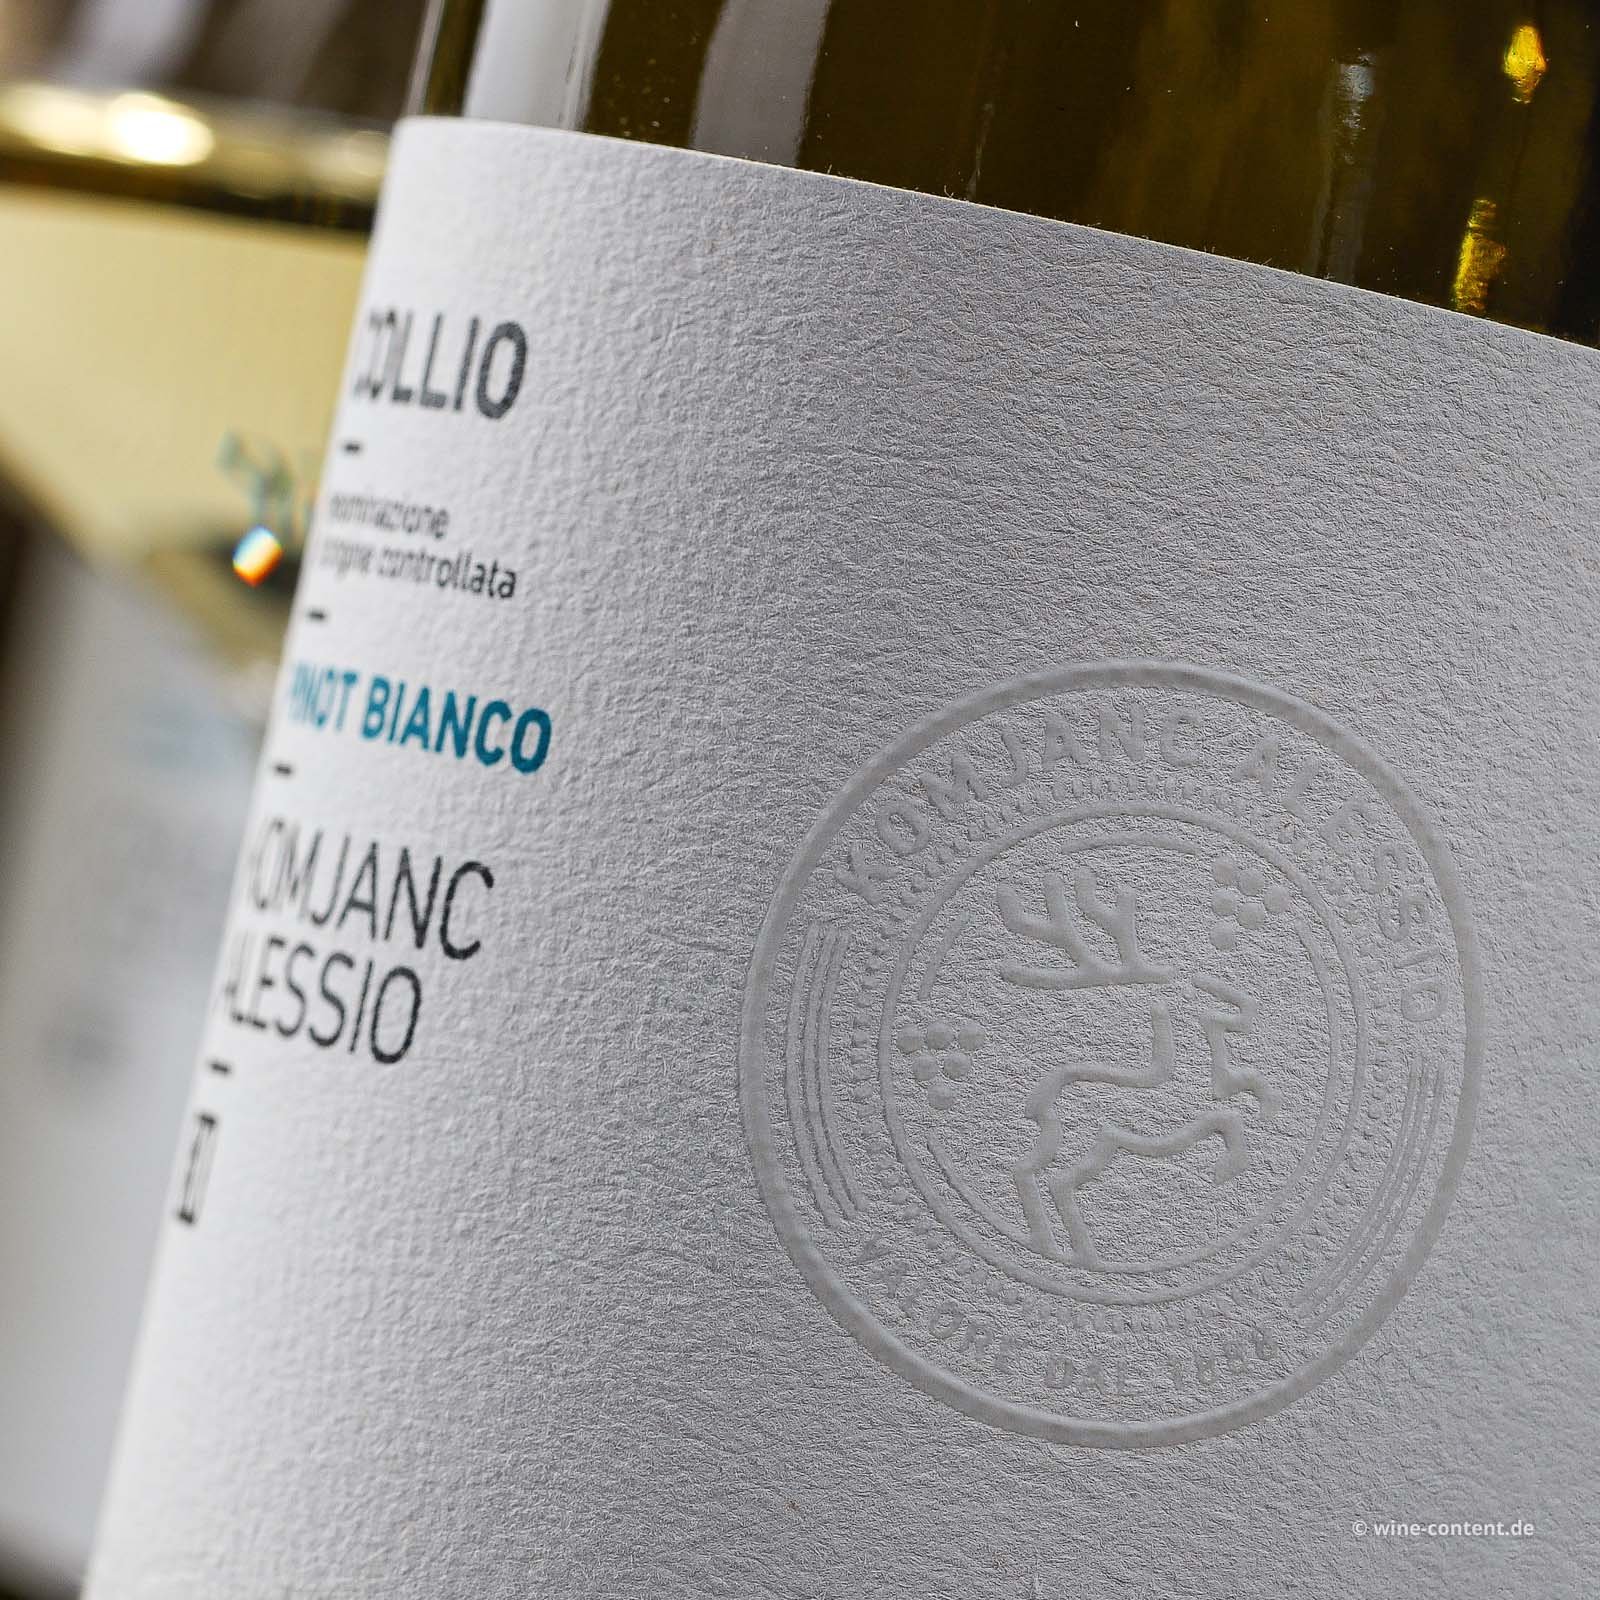 Pinot Bianco 2023 Collio